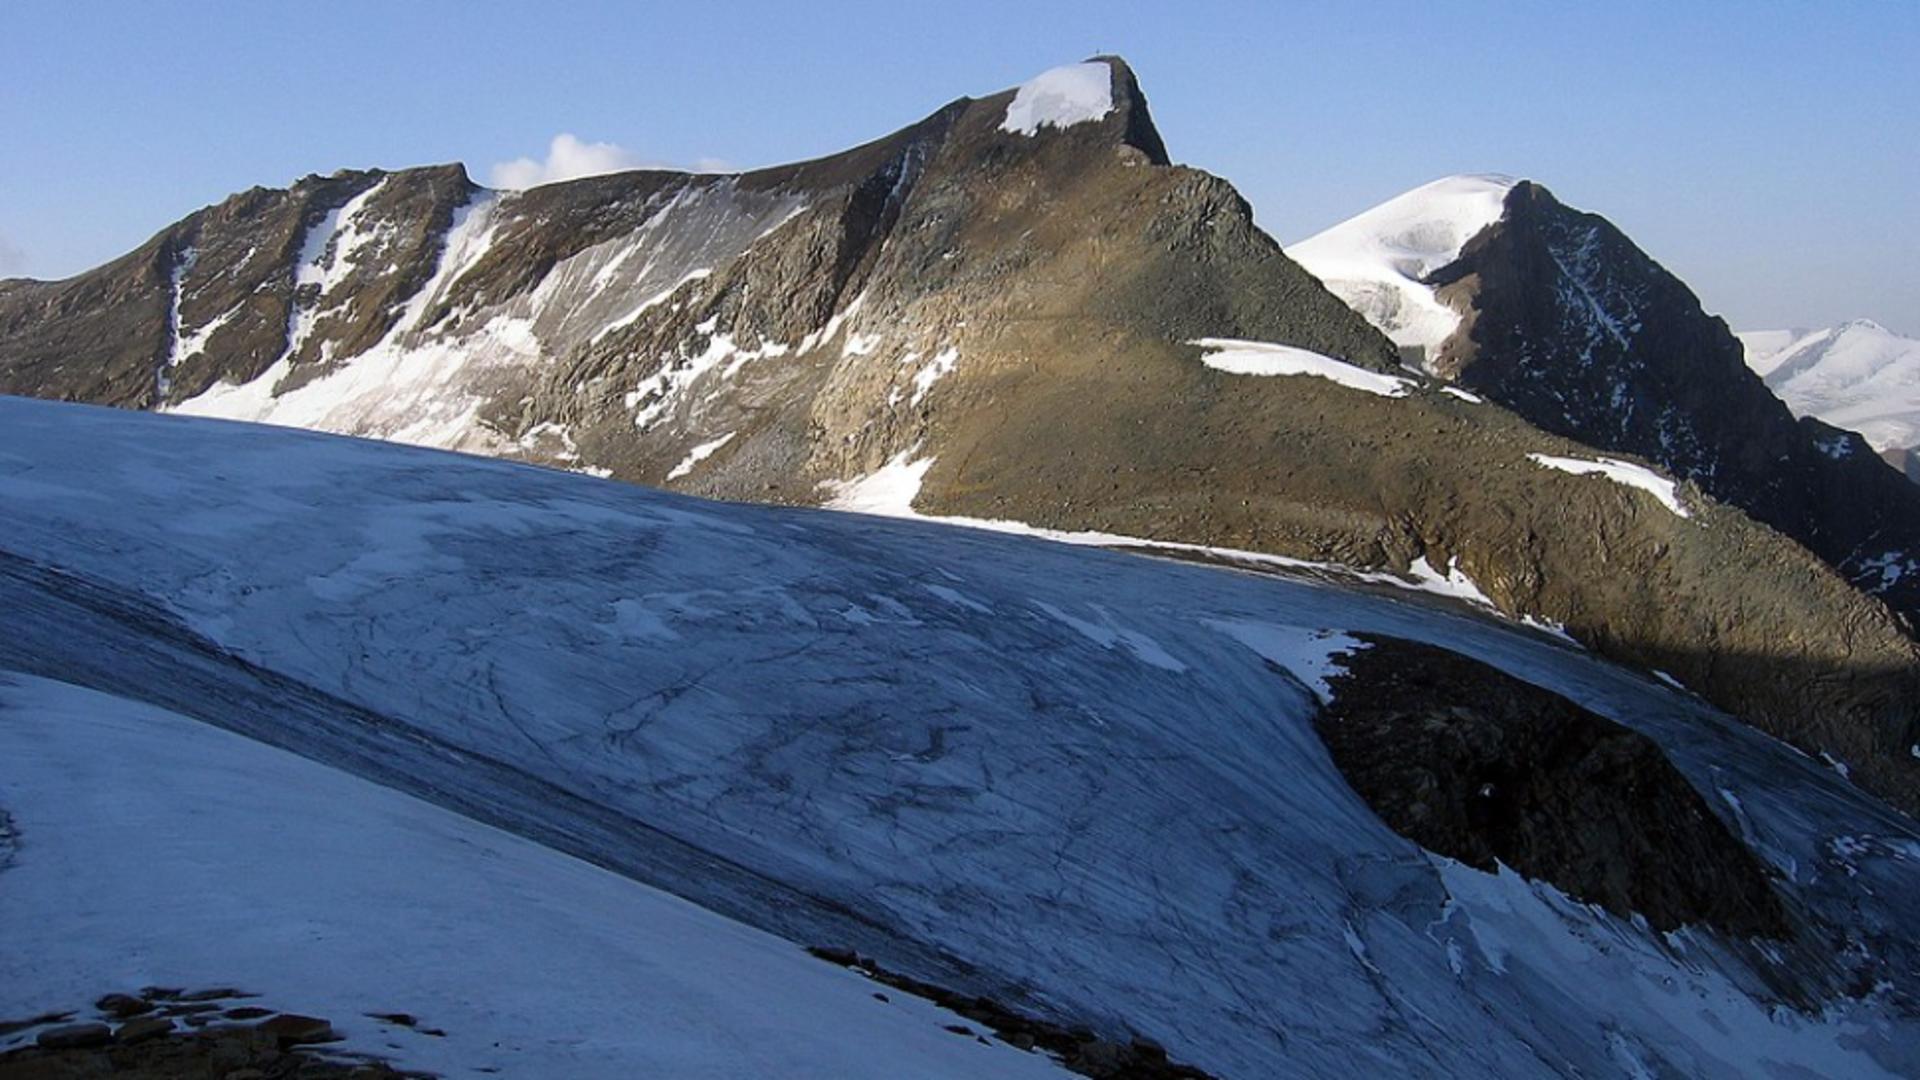 Cadavrul unui bărbat dispărut acum 52 de ani, descoperit într-un ghețar din Austria